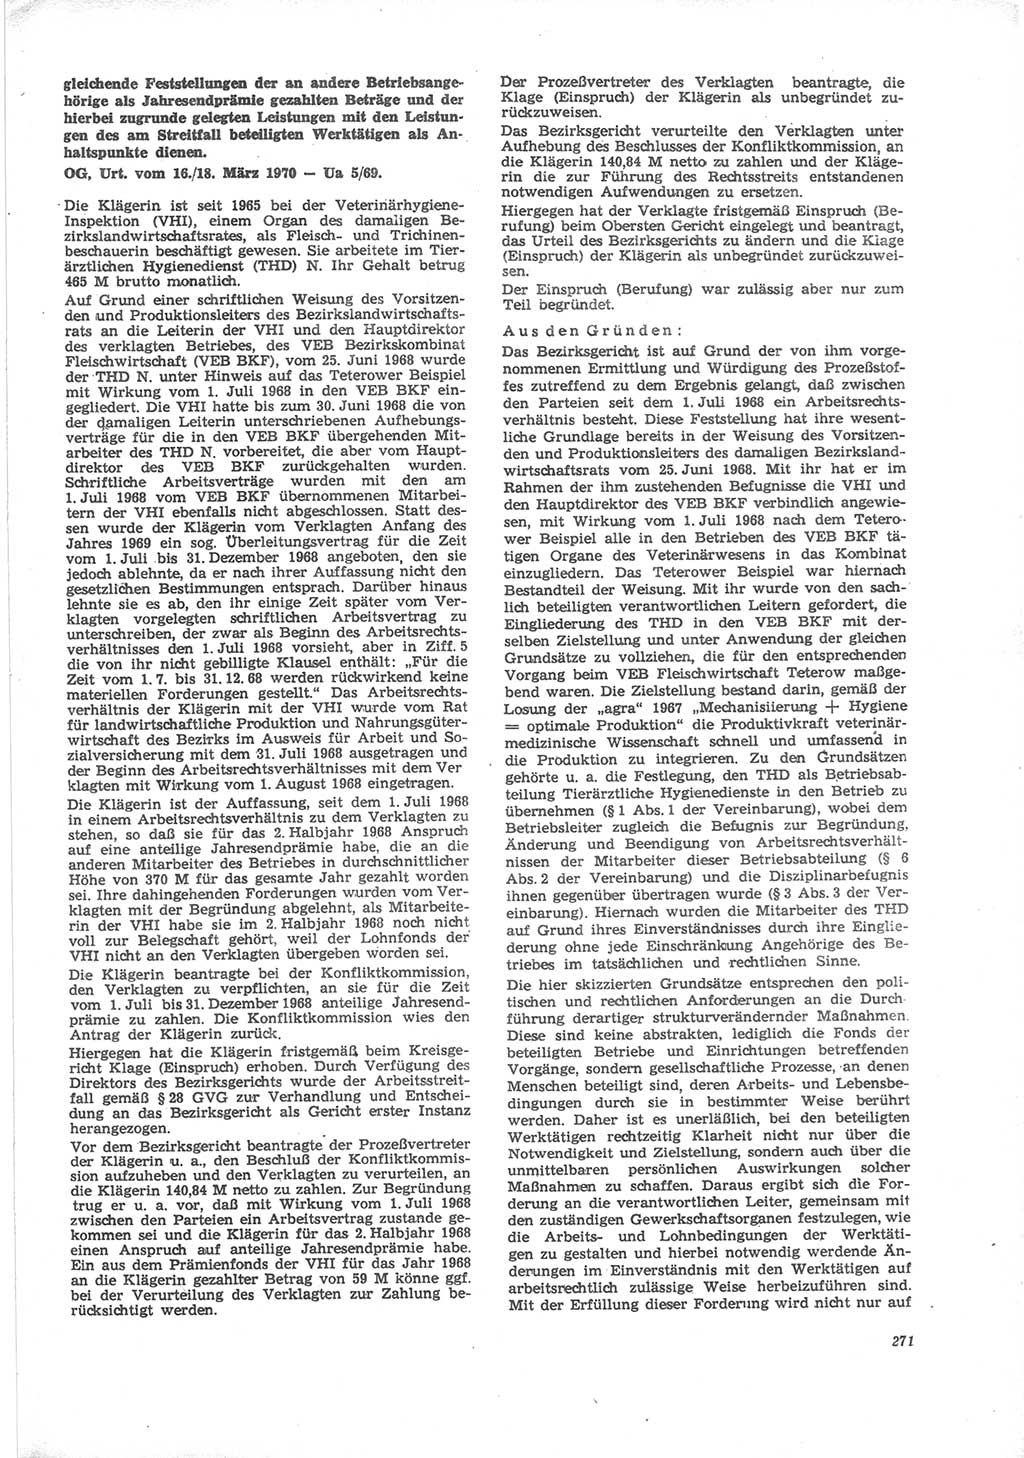 Neue Justiz (NJ), Zeitschrift für Recht und Rechtswissenschaft [Deutsche Demokratische Republik (DDR)], 24. Jahrgang 1970, Seite 271 (NJ DDR 1970, S. 271)